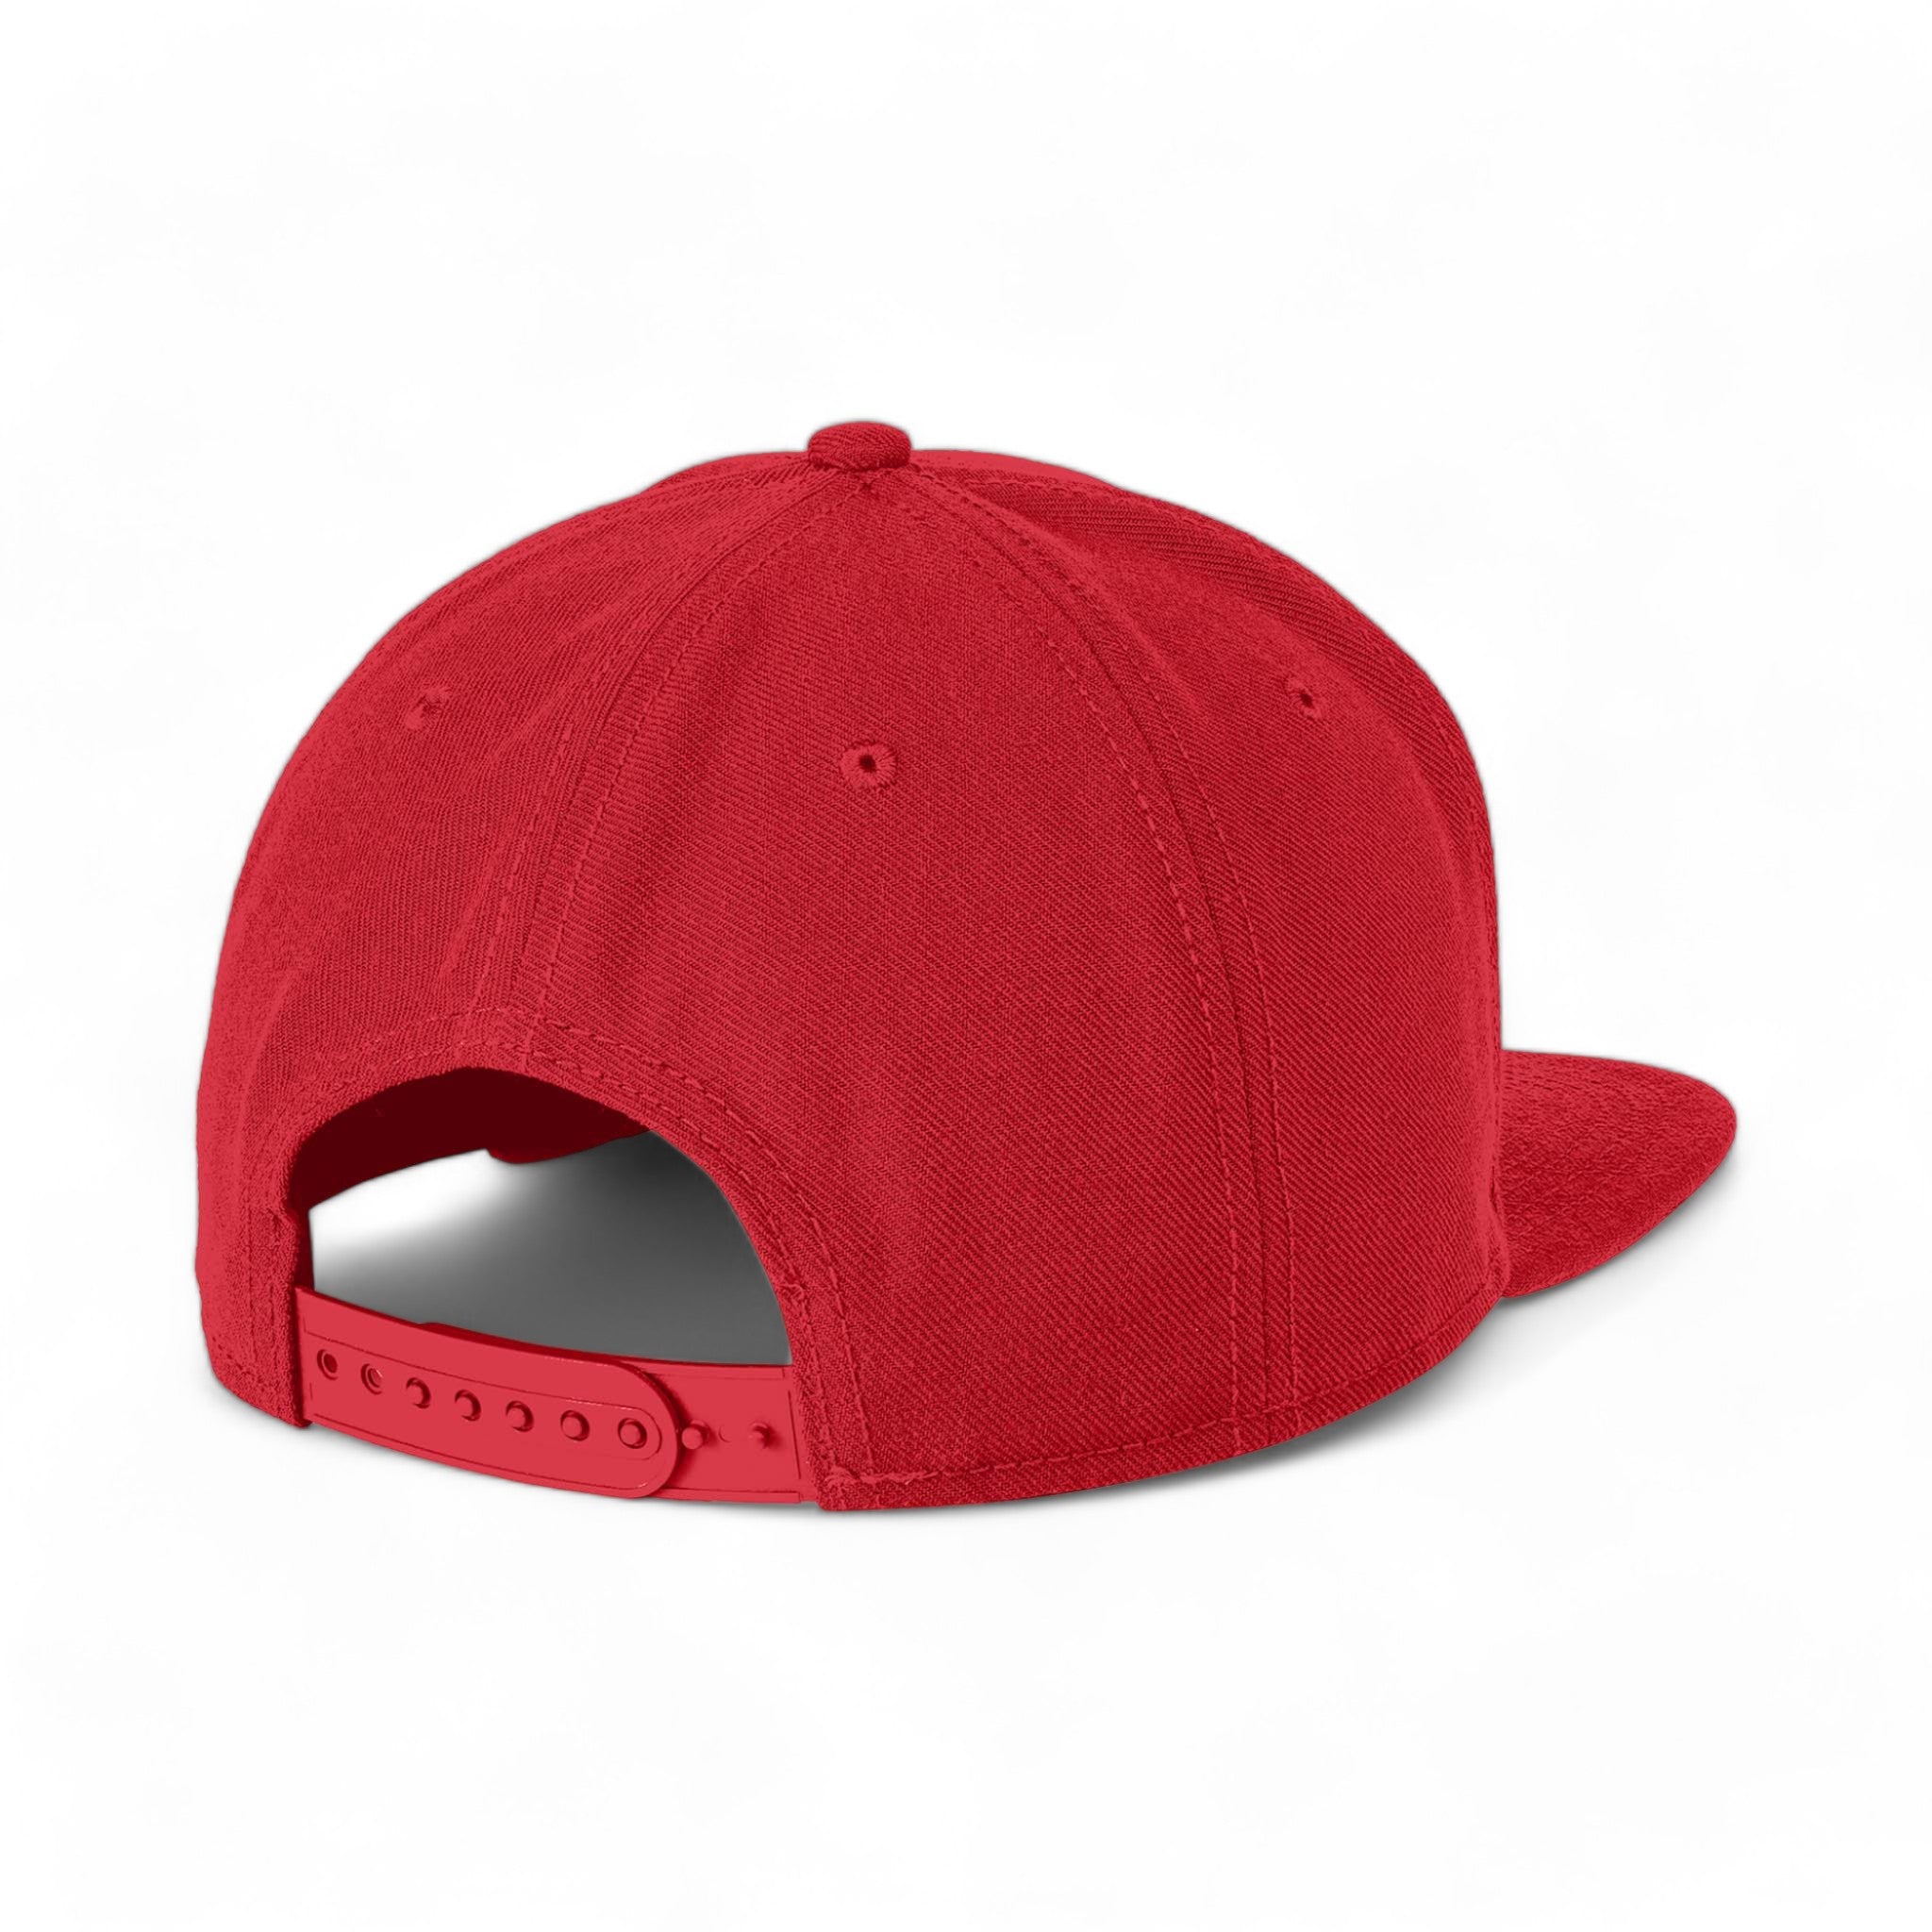 Back view of New Era NE402 custom hat in scarlet